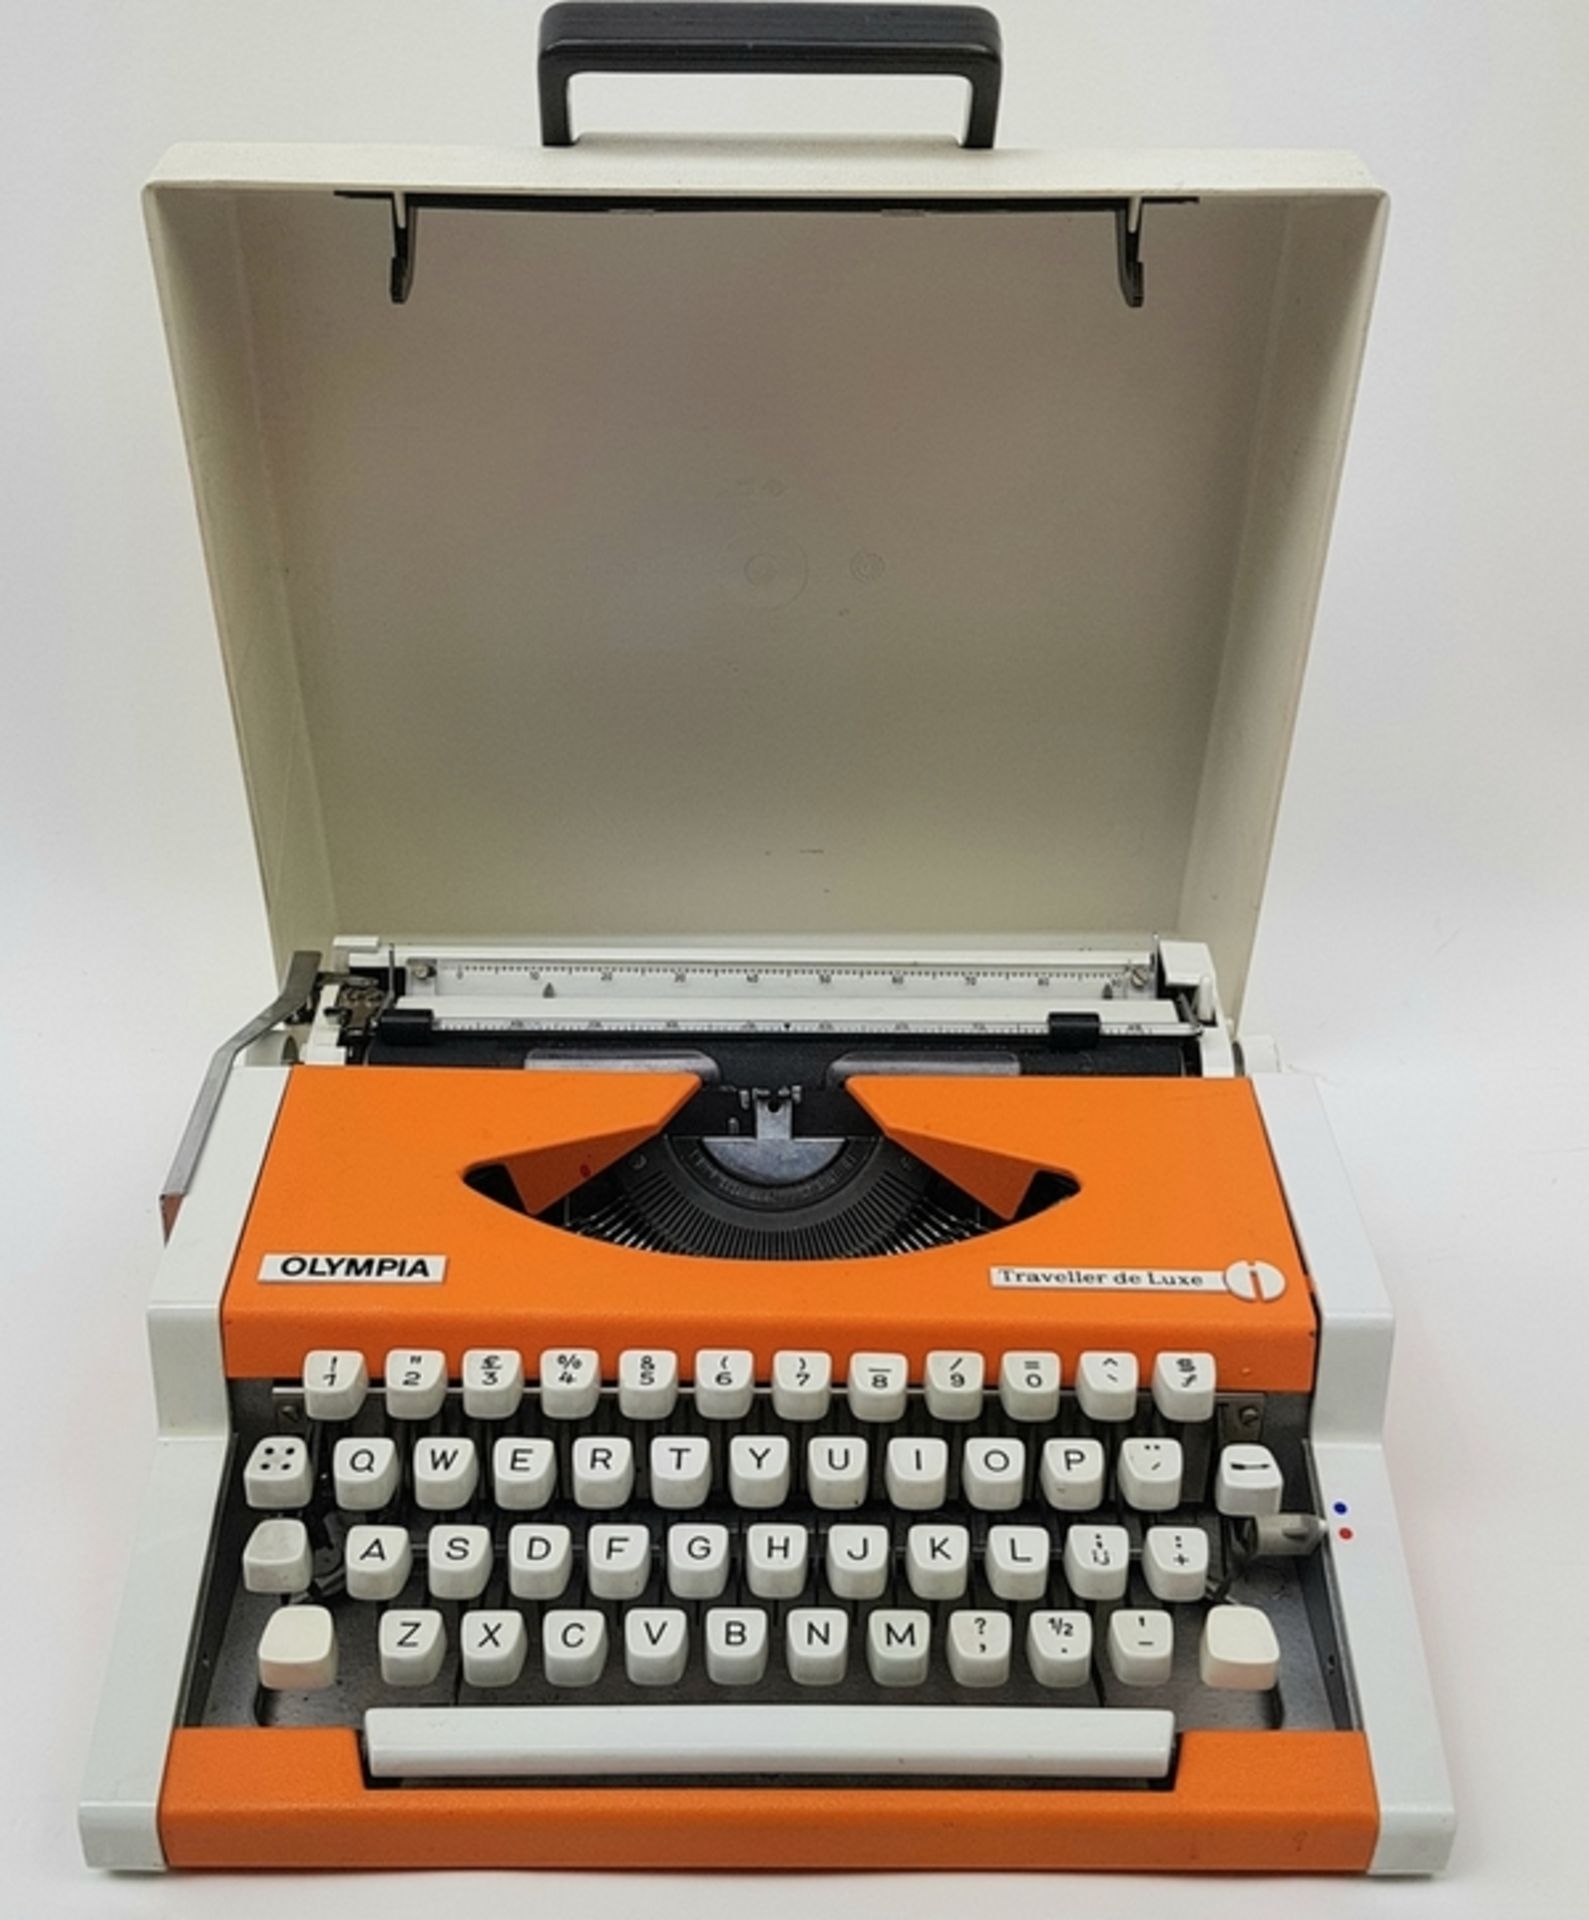 (Design) Typemachine Olympia Traveller de Luxe, Duitsland jaren '70Draagbare typemachine met bi